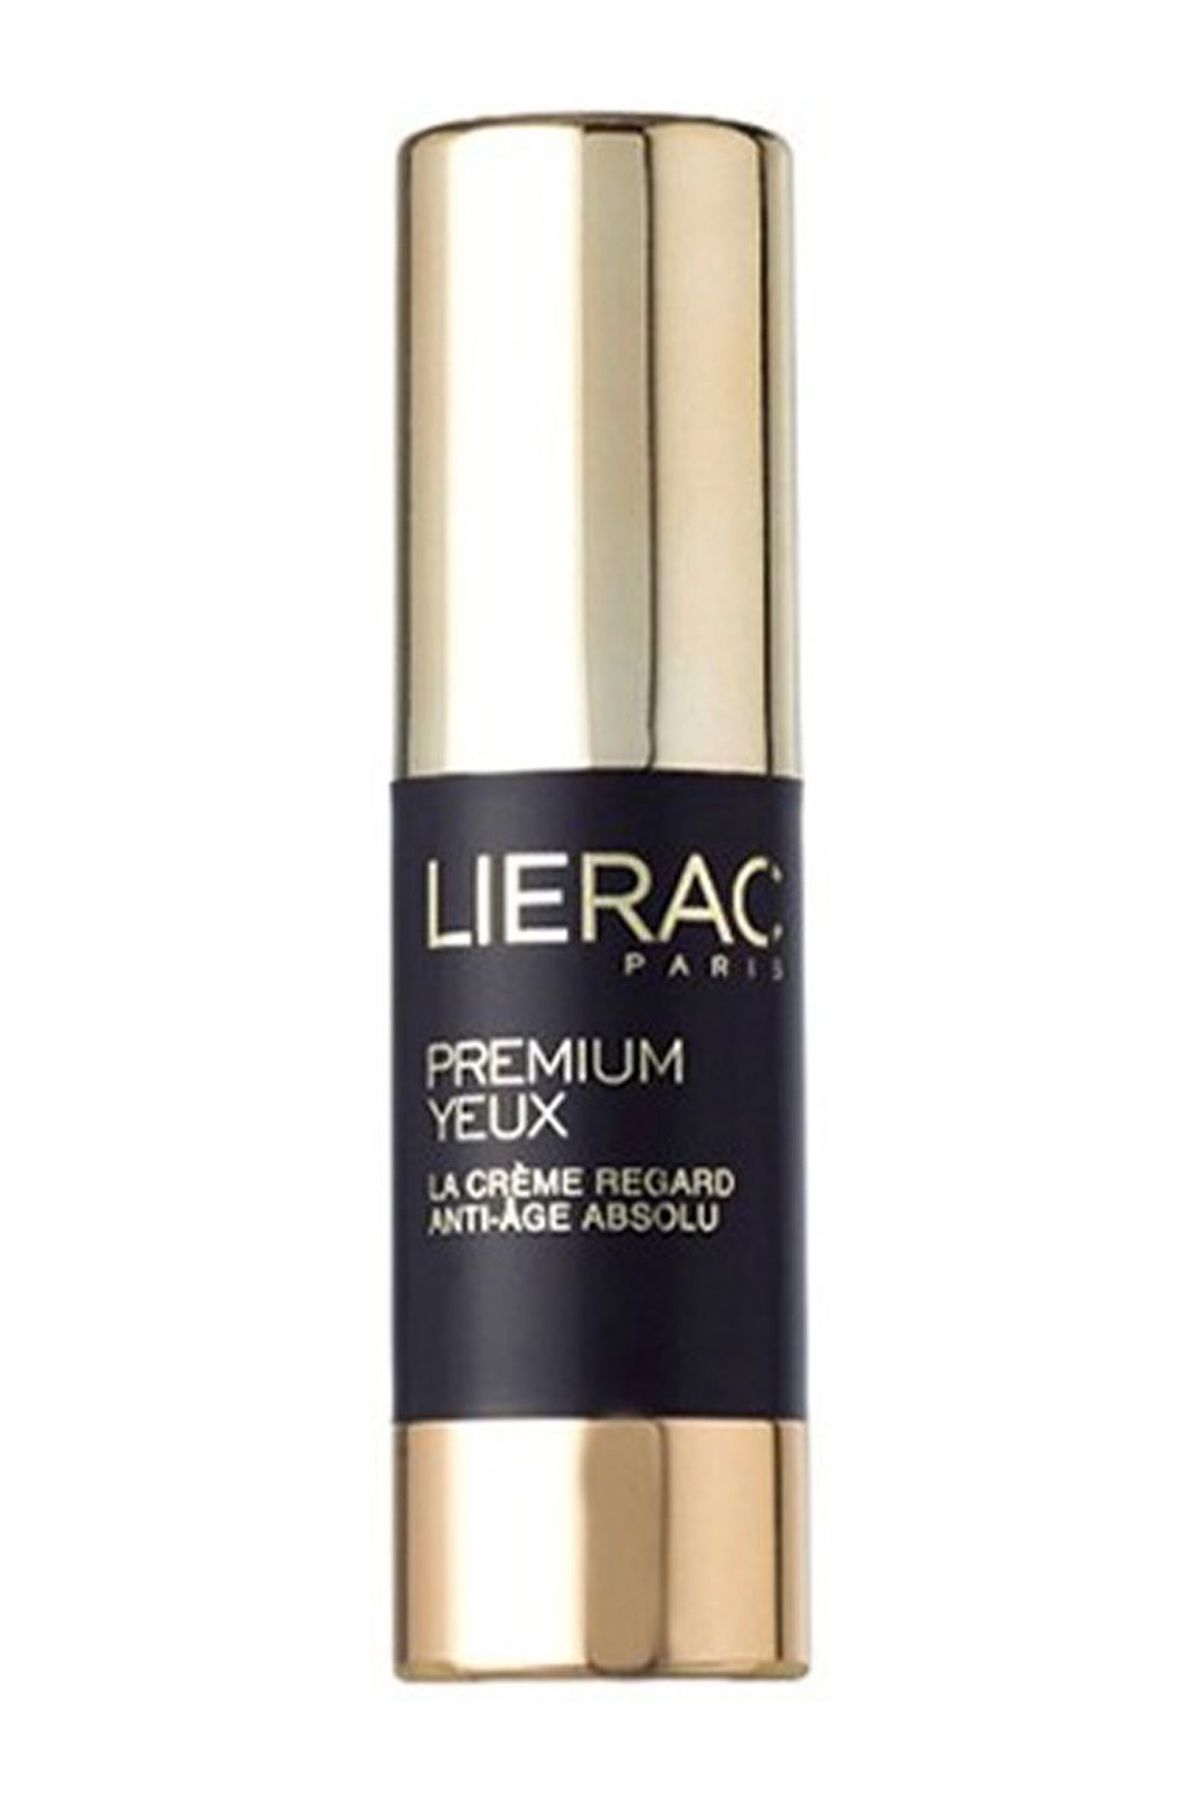 Lierac Premium The Eye Cream 15ml Tüm Cilt Tipleri İçin Yaşlanma Karşıtı Global Göz Çevresi Bakımı